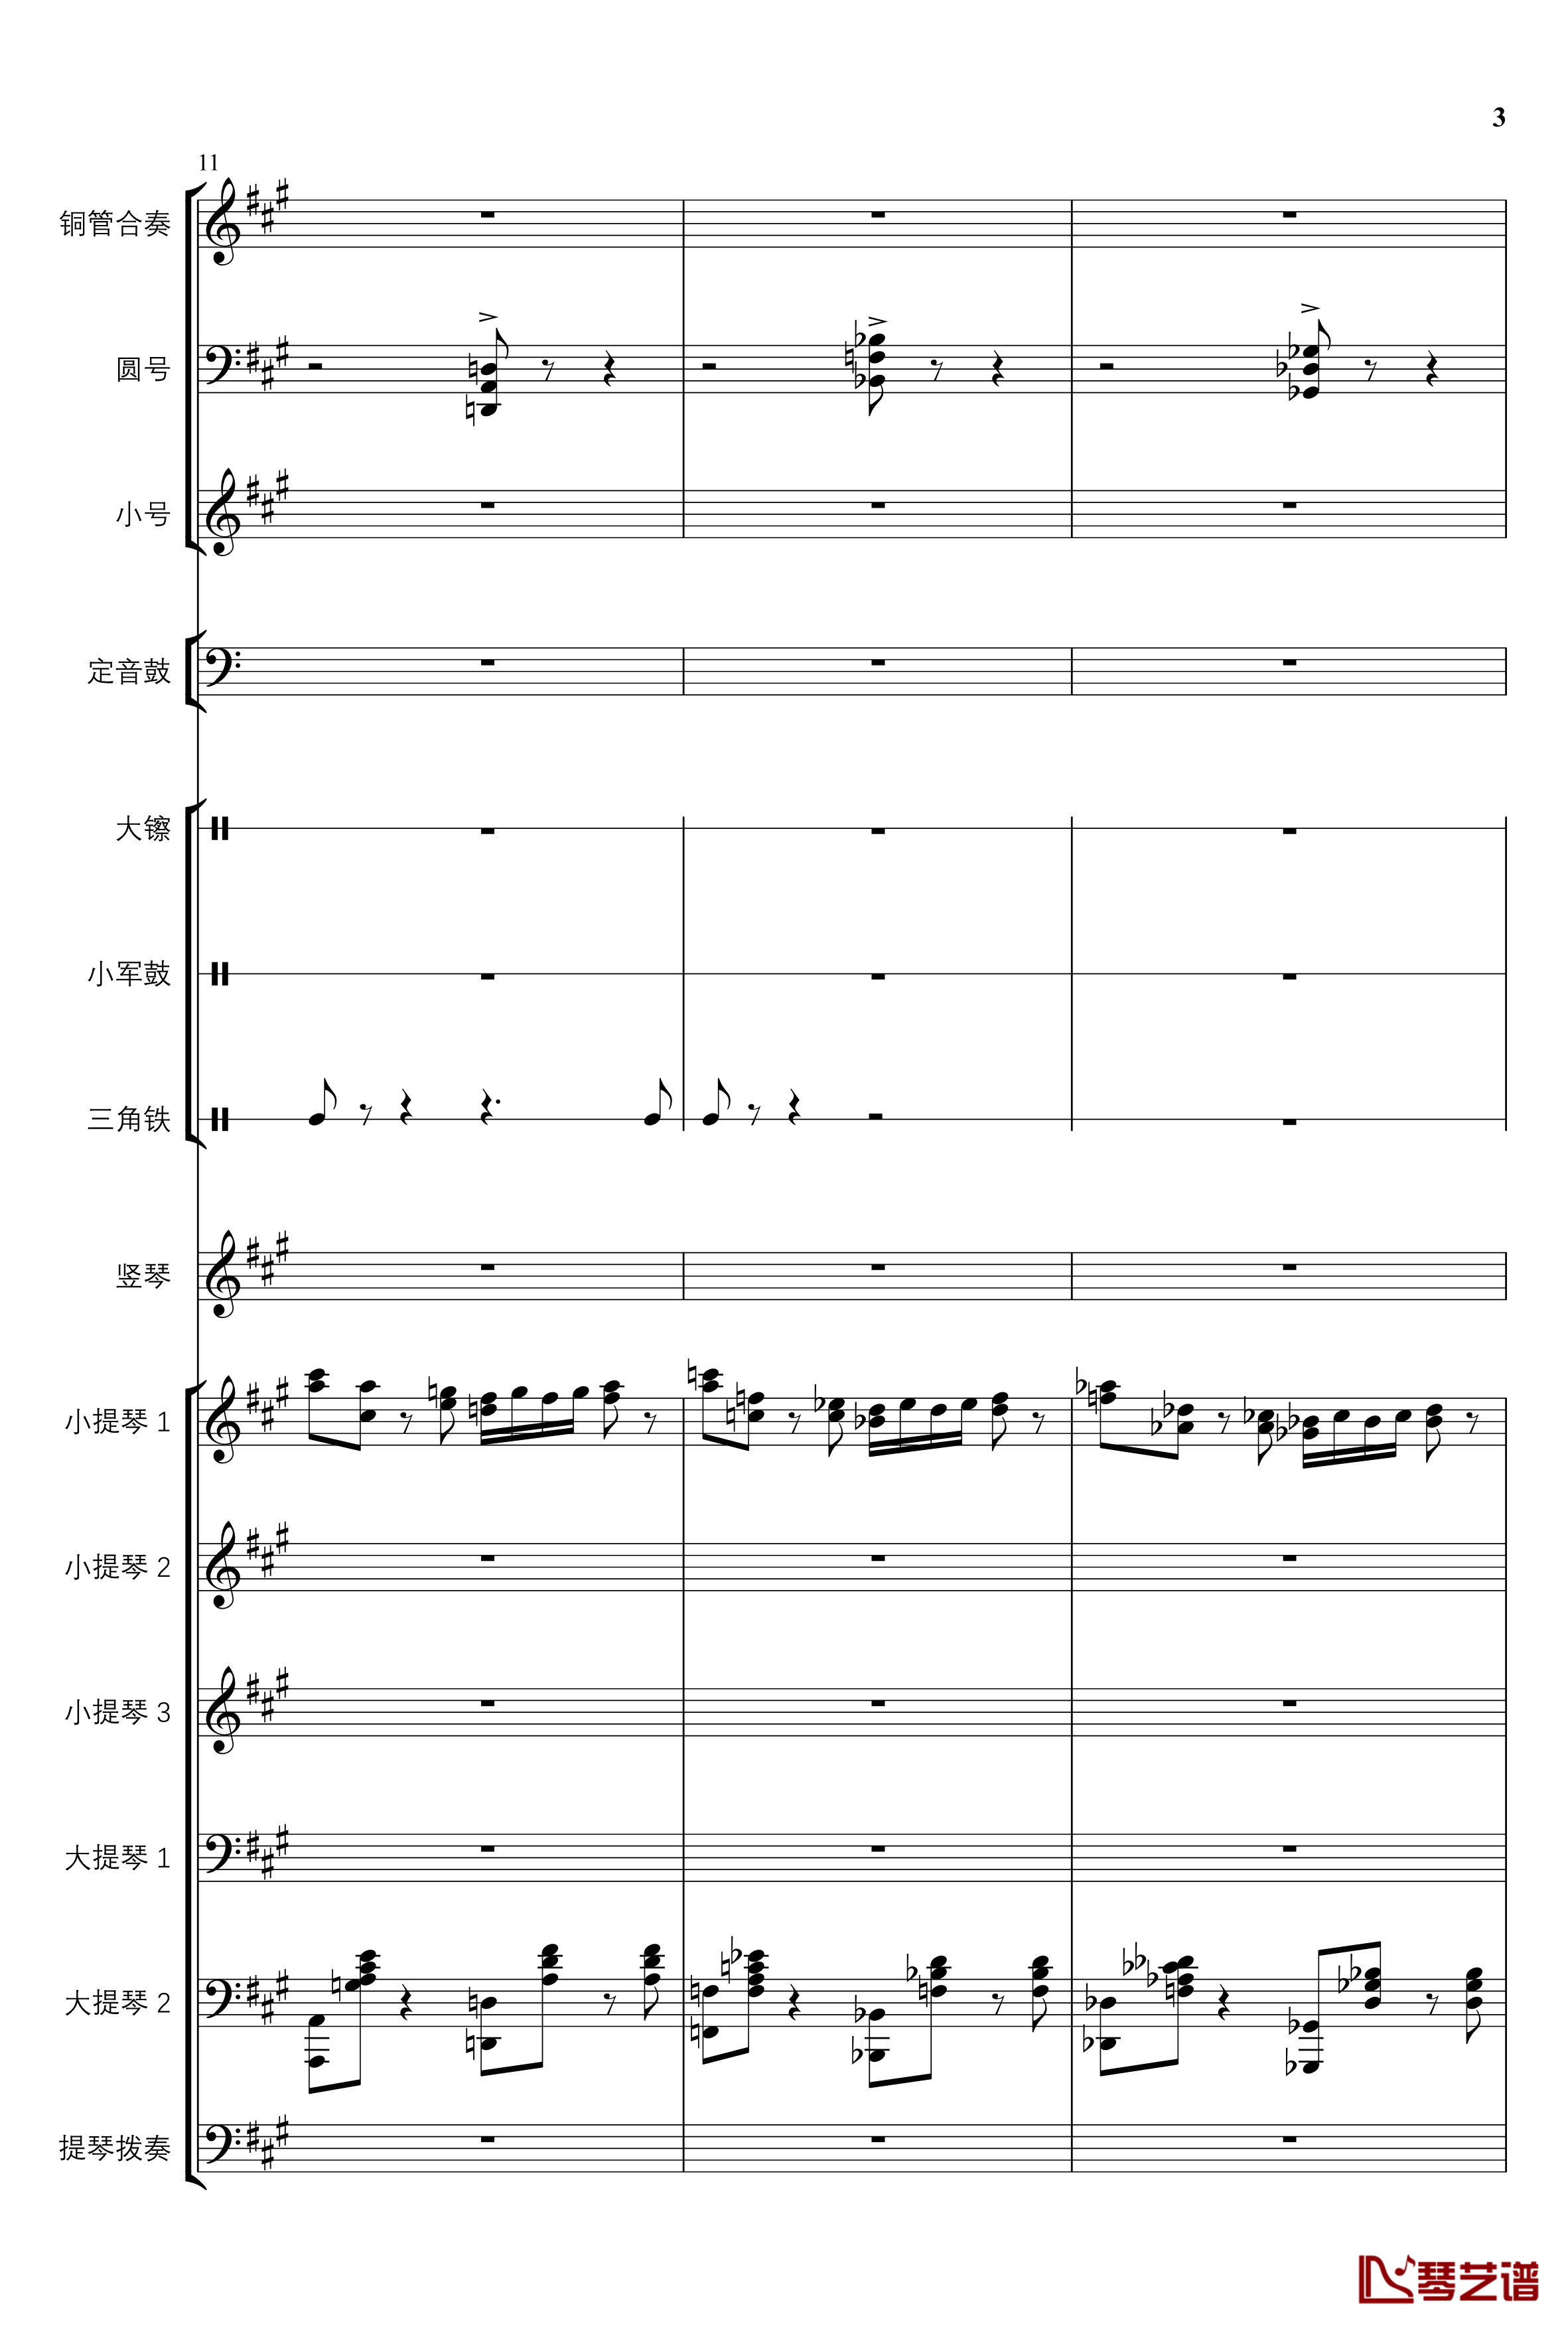 2013考试周的叙事曲钢琴谱-管弦乐重编曲版-江畔新绿3